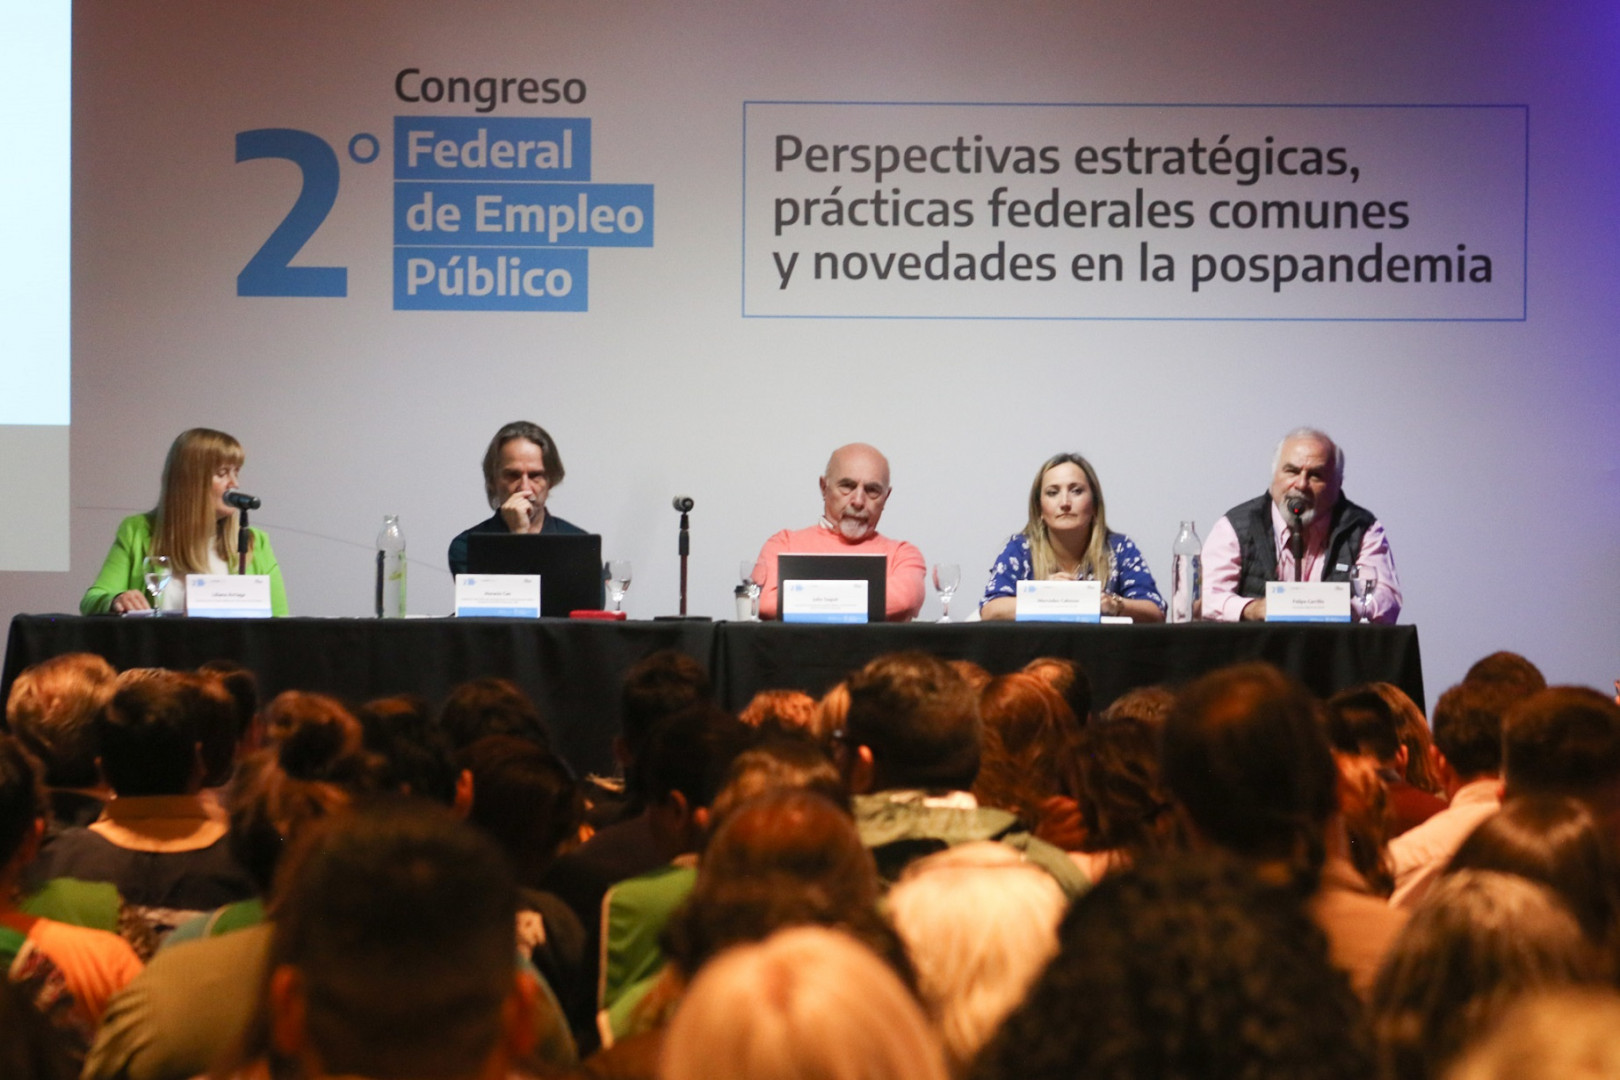 2022-10-19 - 2° Congreso Federal de Empleo Público Panel 1 